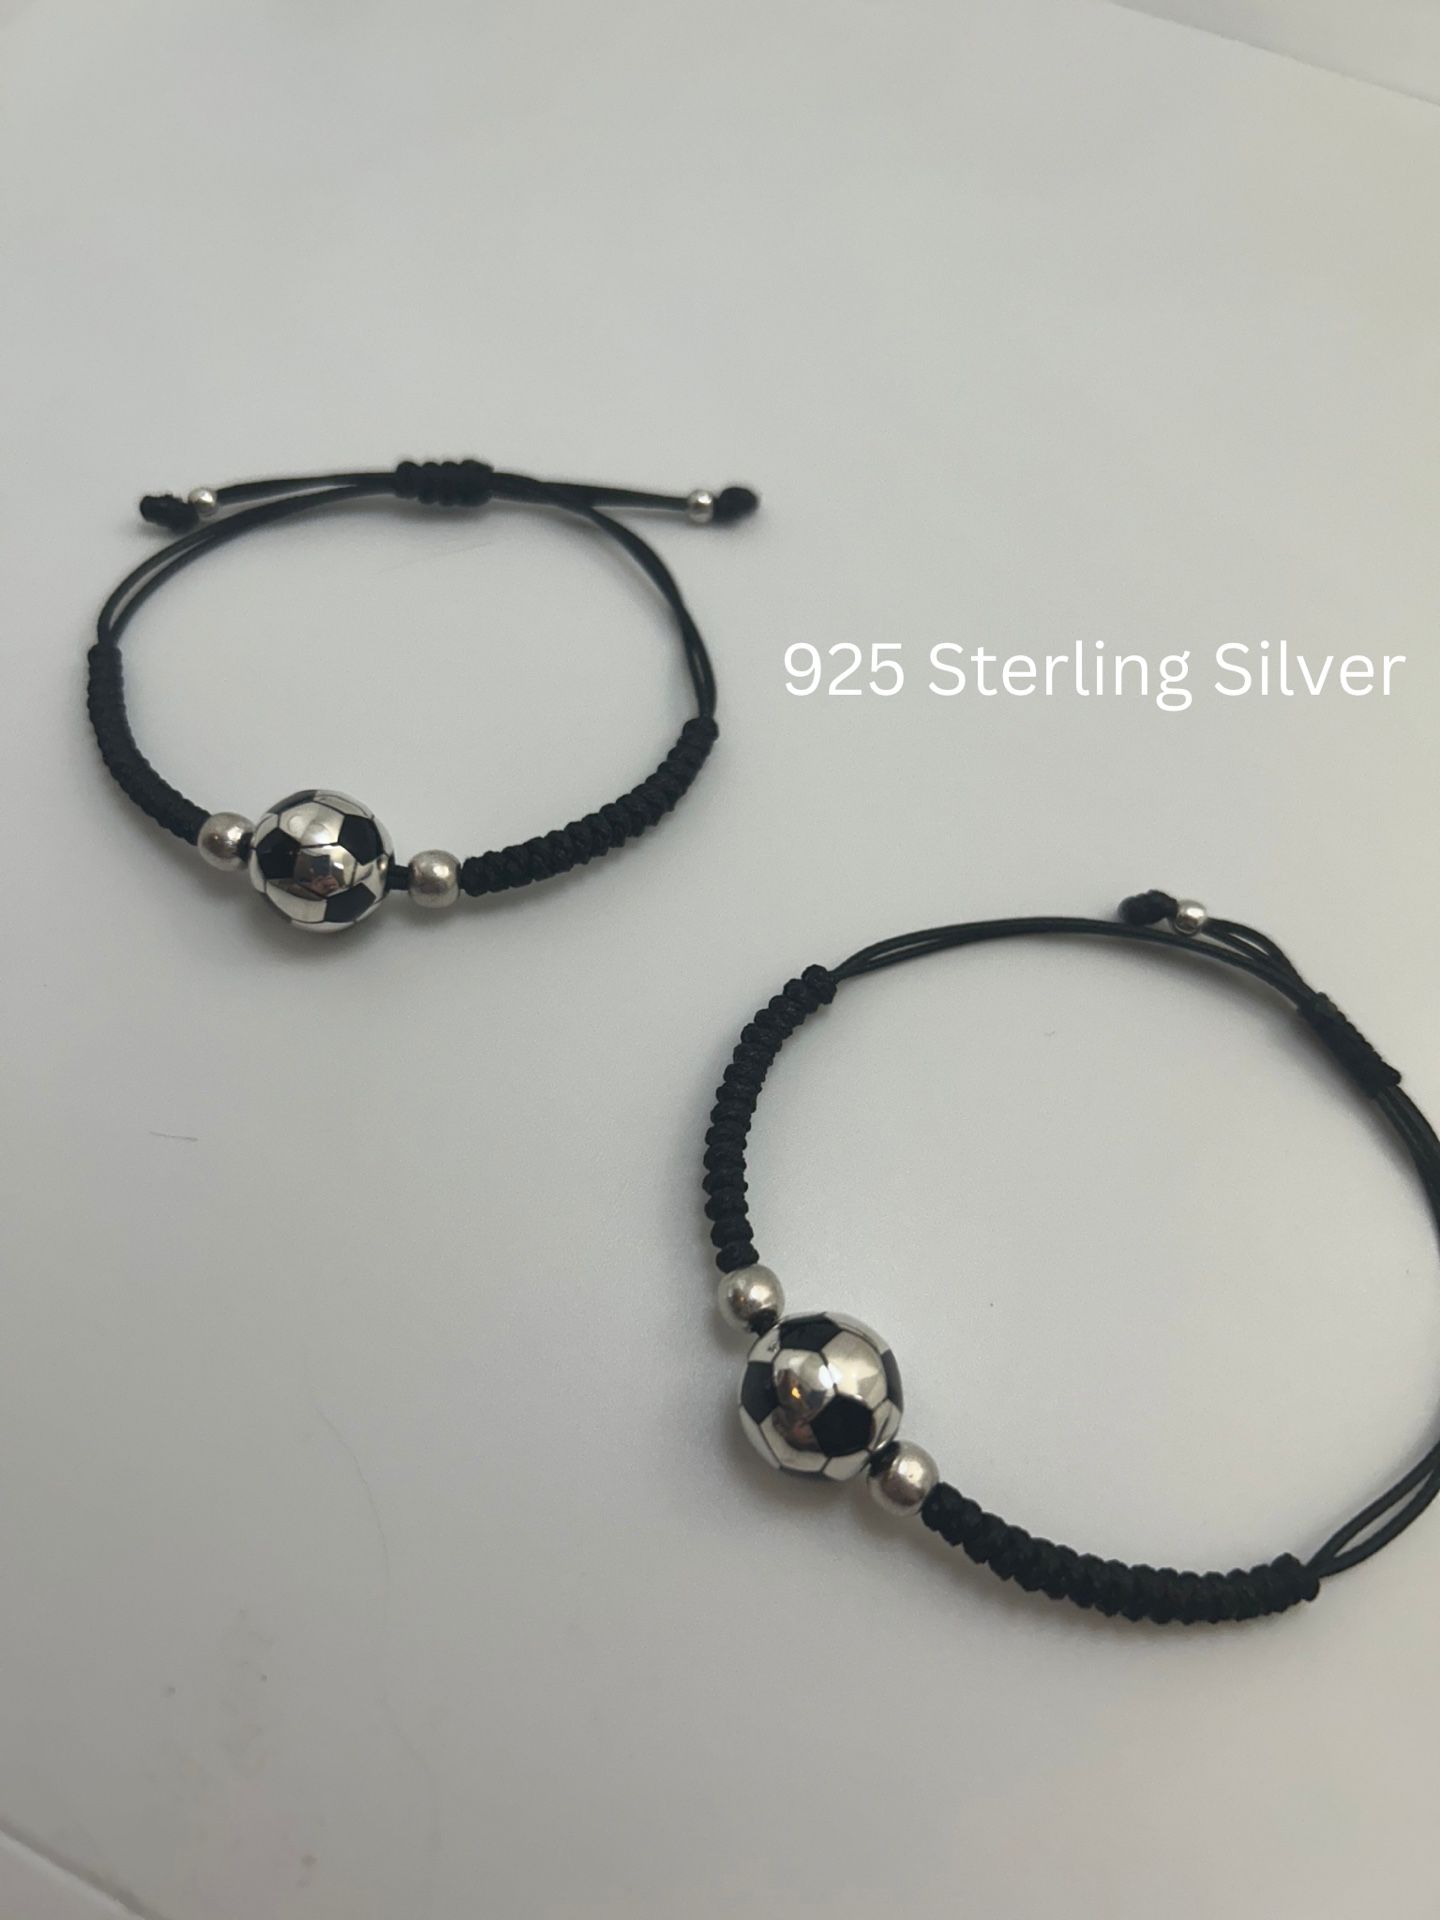 Soccer ball Sterling Silver Bracelets